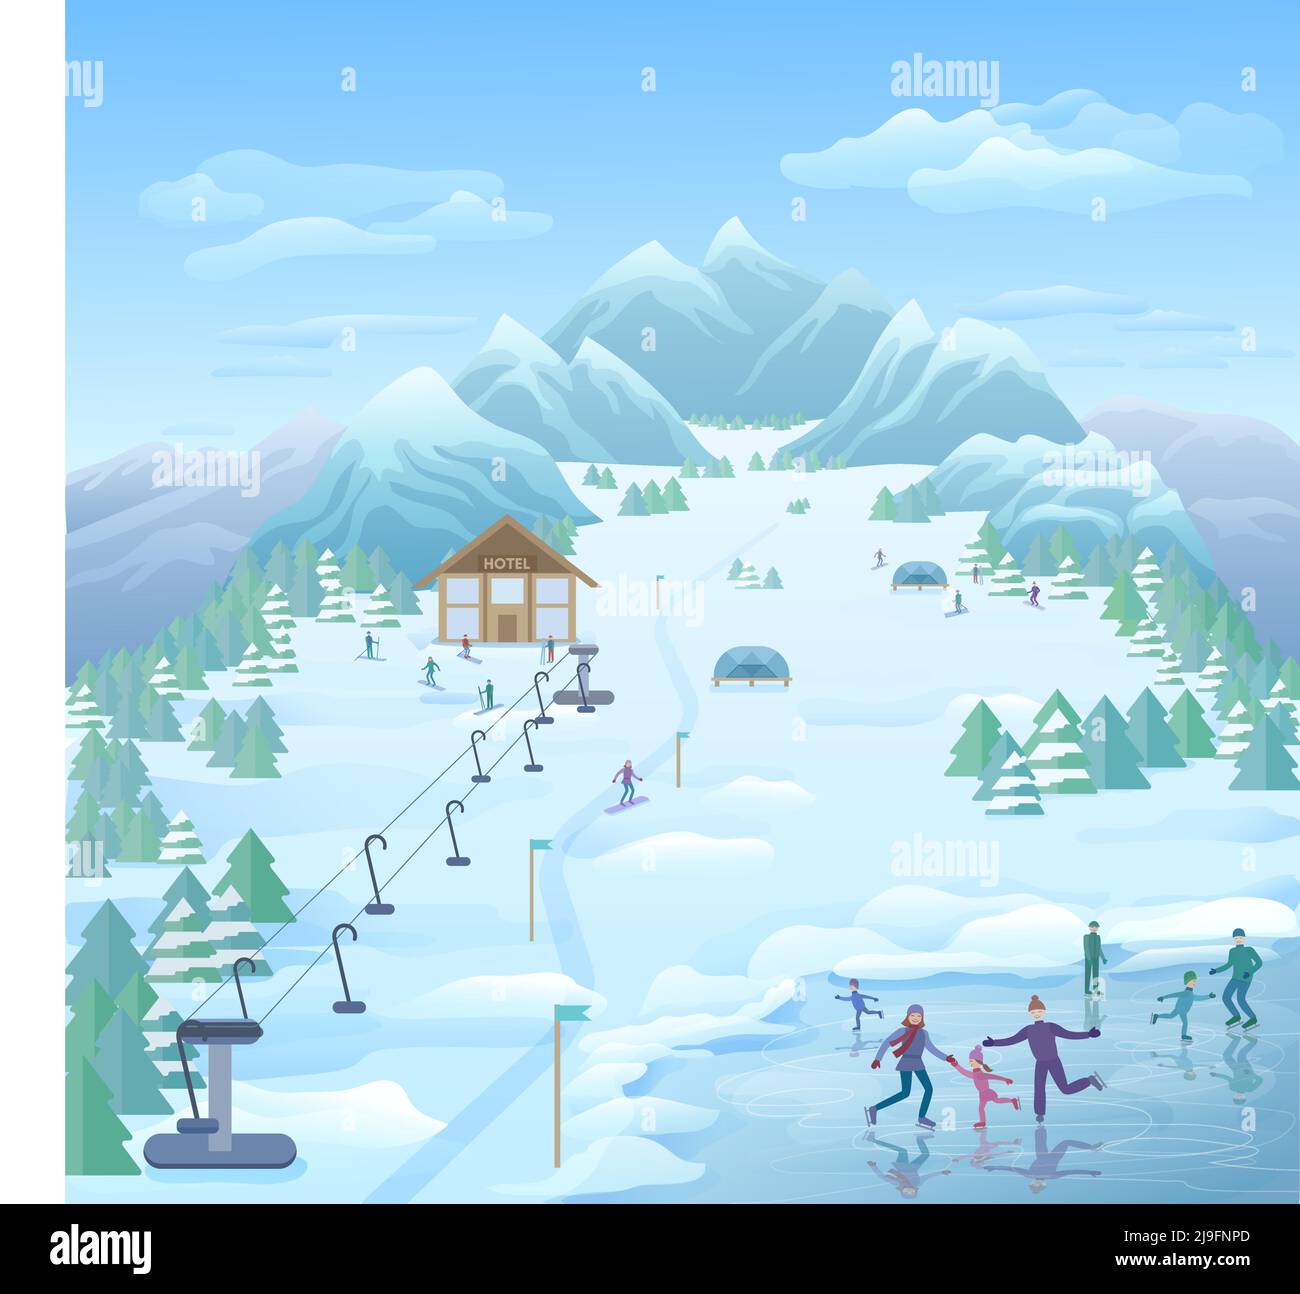 Modèle de parc réactionnaire d'hiver avec patinage ski surf des neiges touristes illustration vectorielle de forêt enneigée et de paysage de montagne Illustration de Vecteur